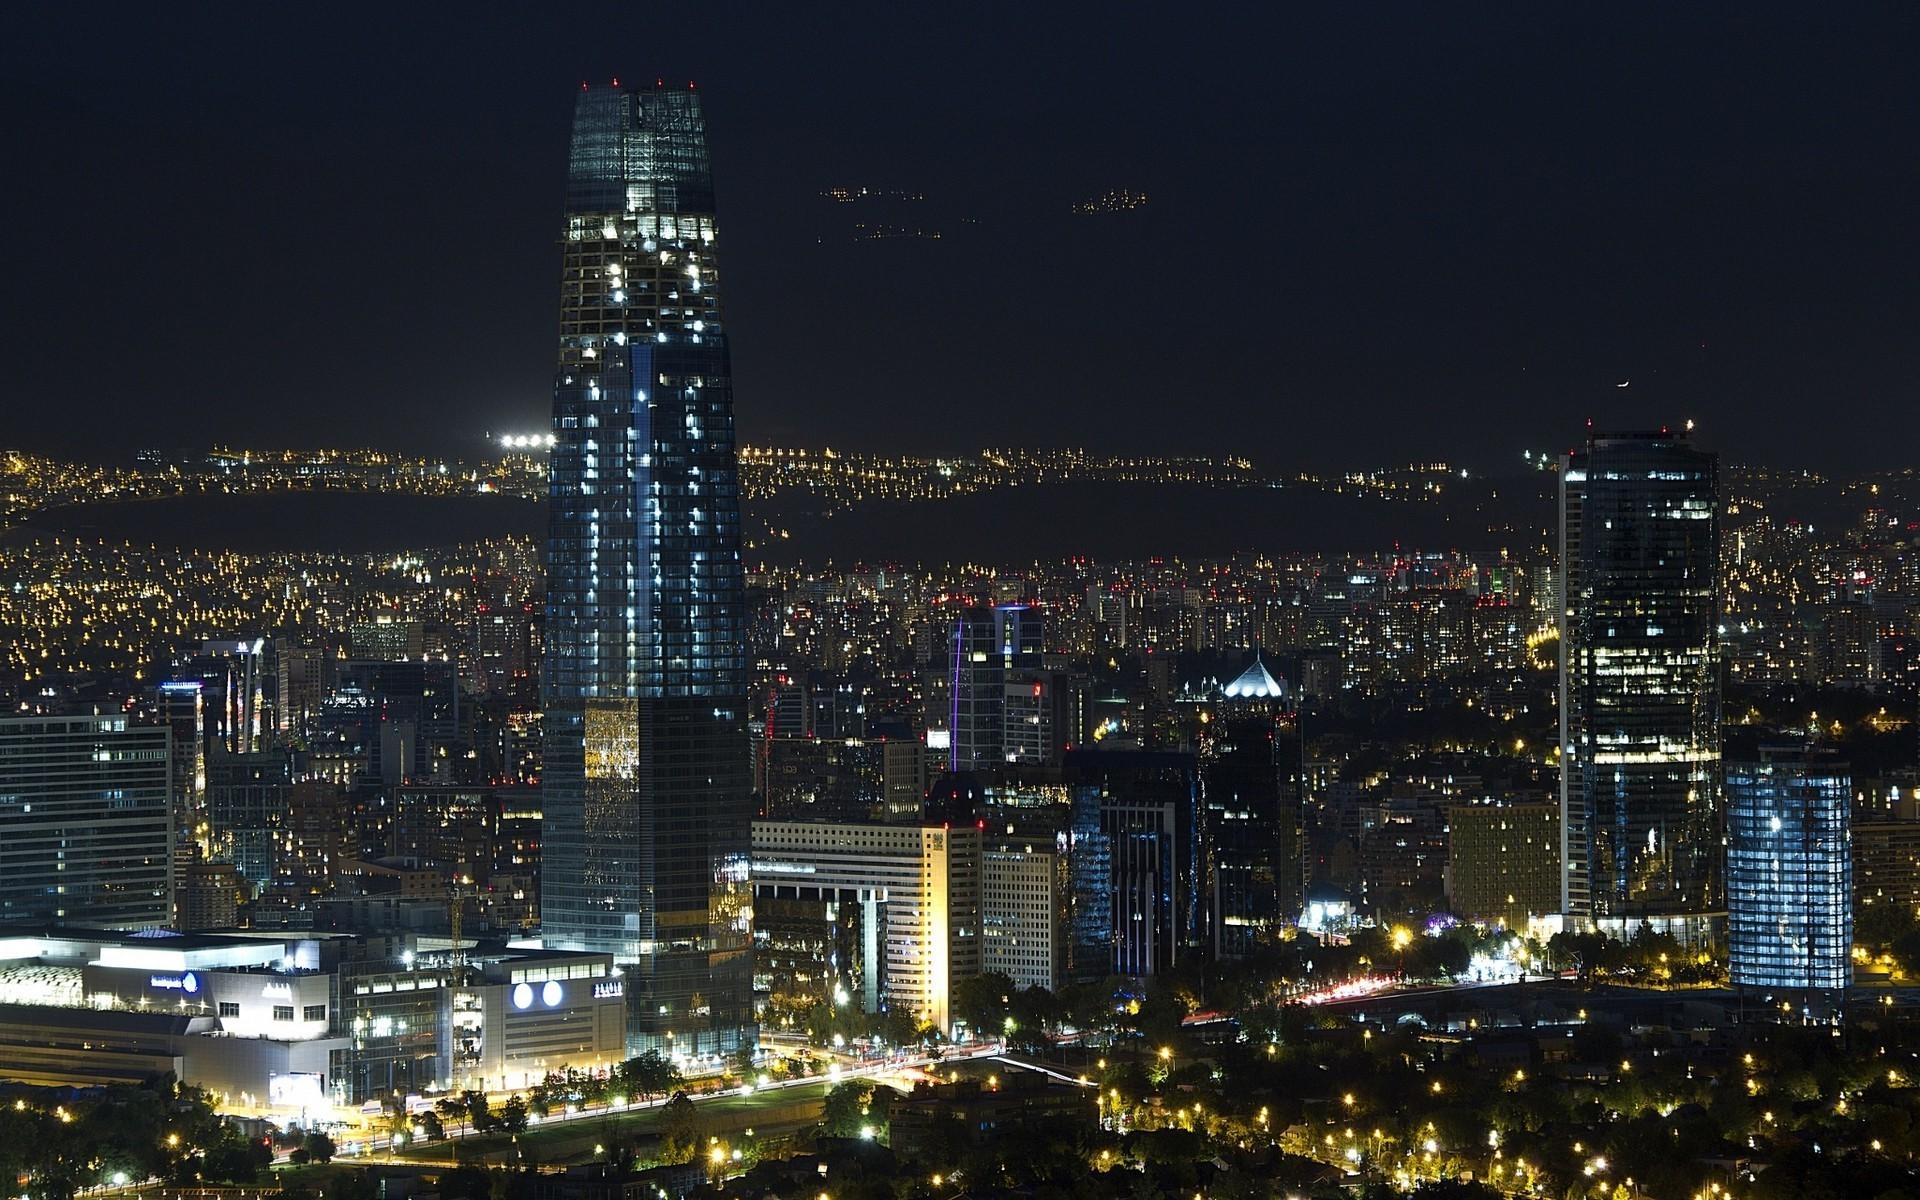 全球六大最美城市夜景:中美各占两个,迪拜垫底